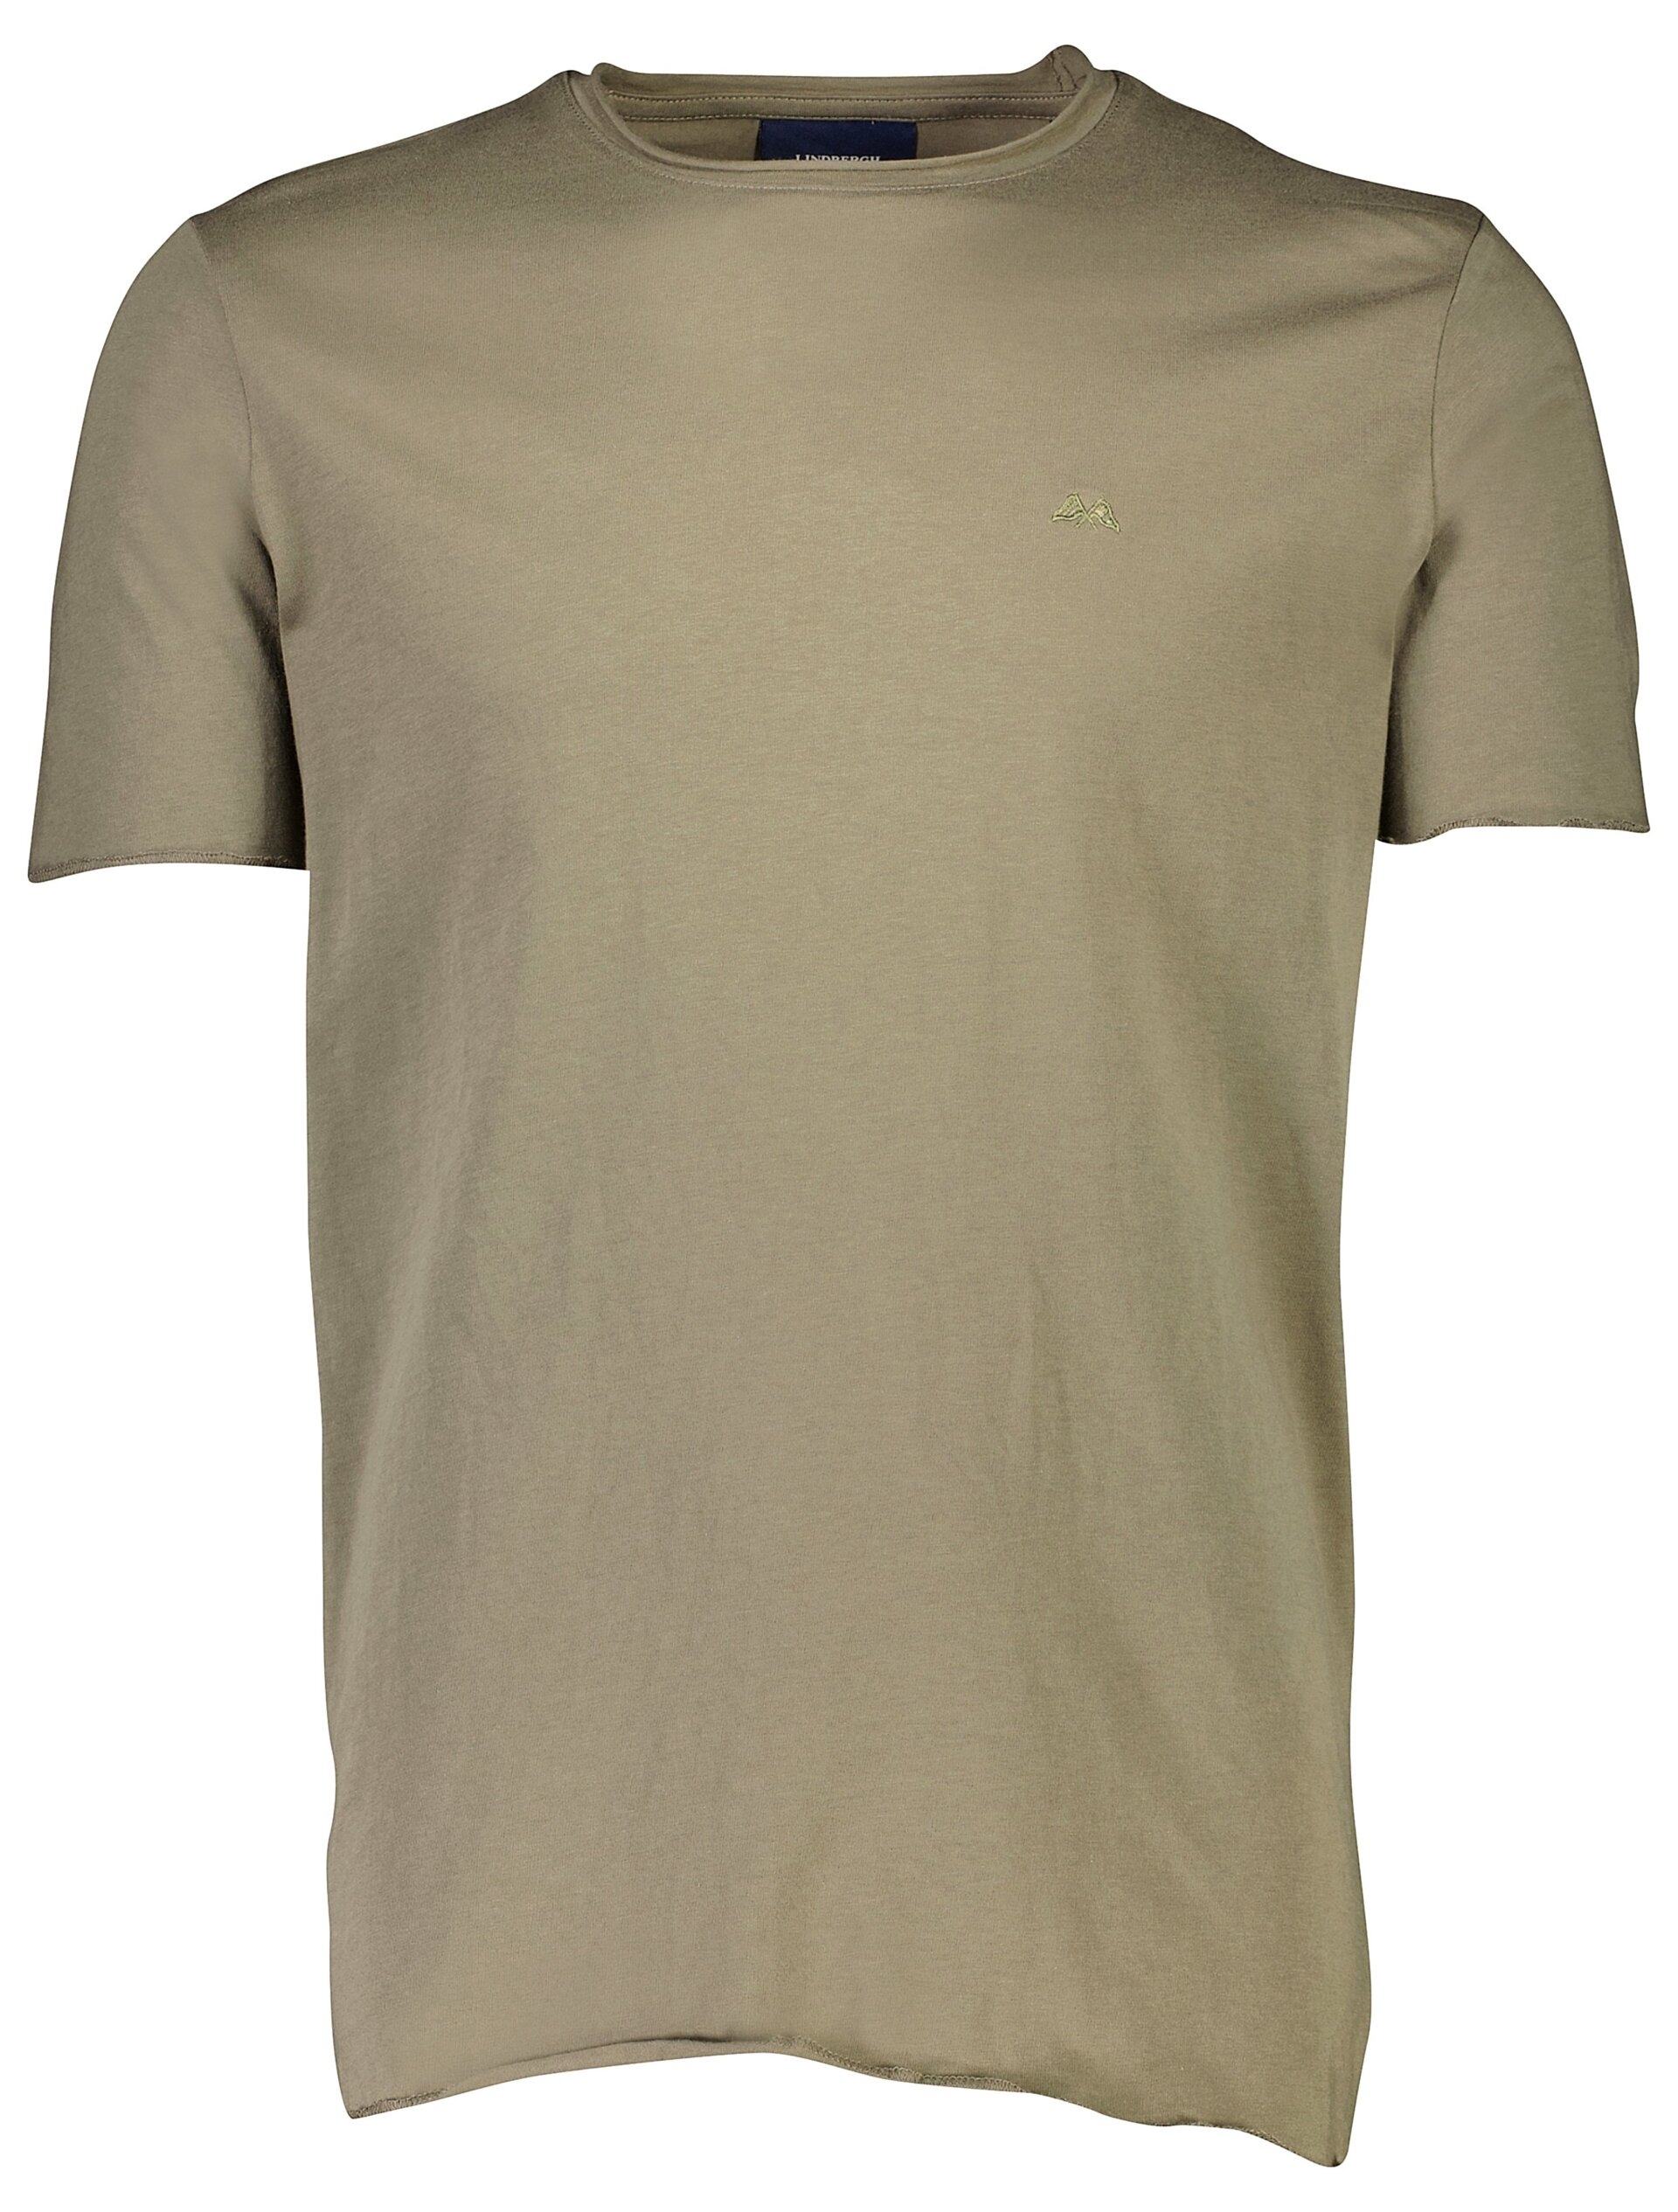 Lindbergh T-shirt groen / lt dusty army